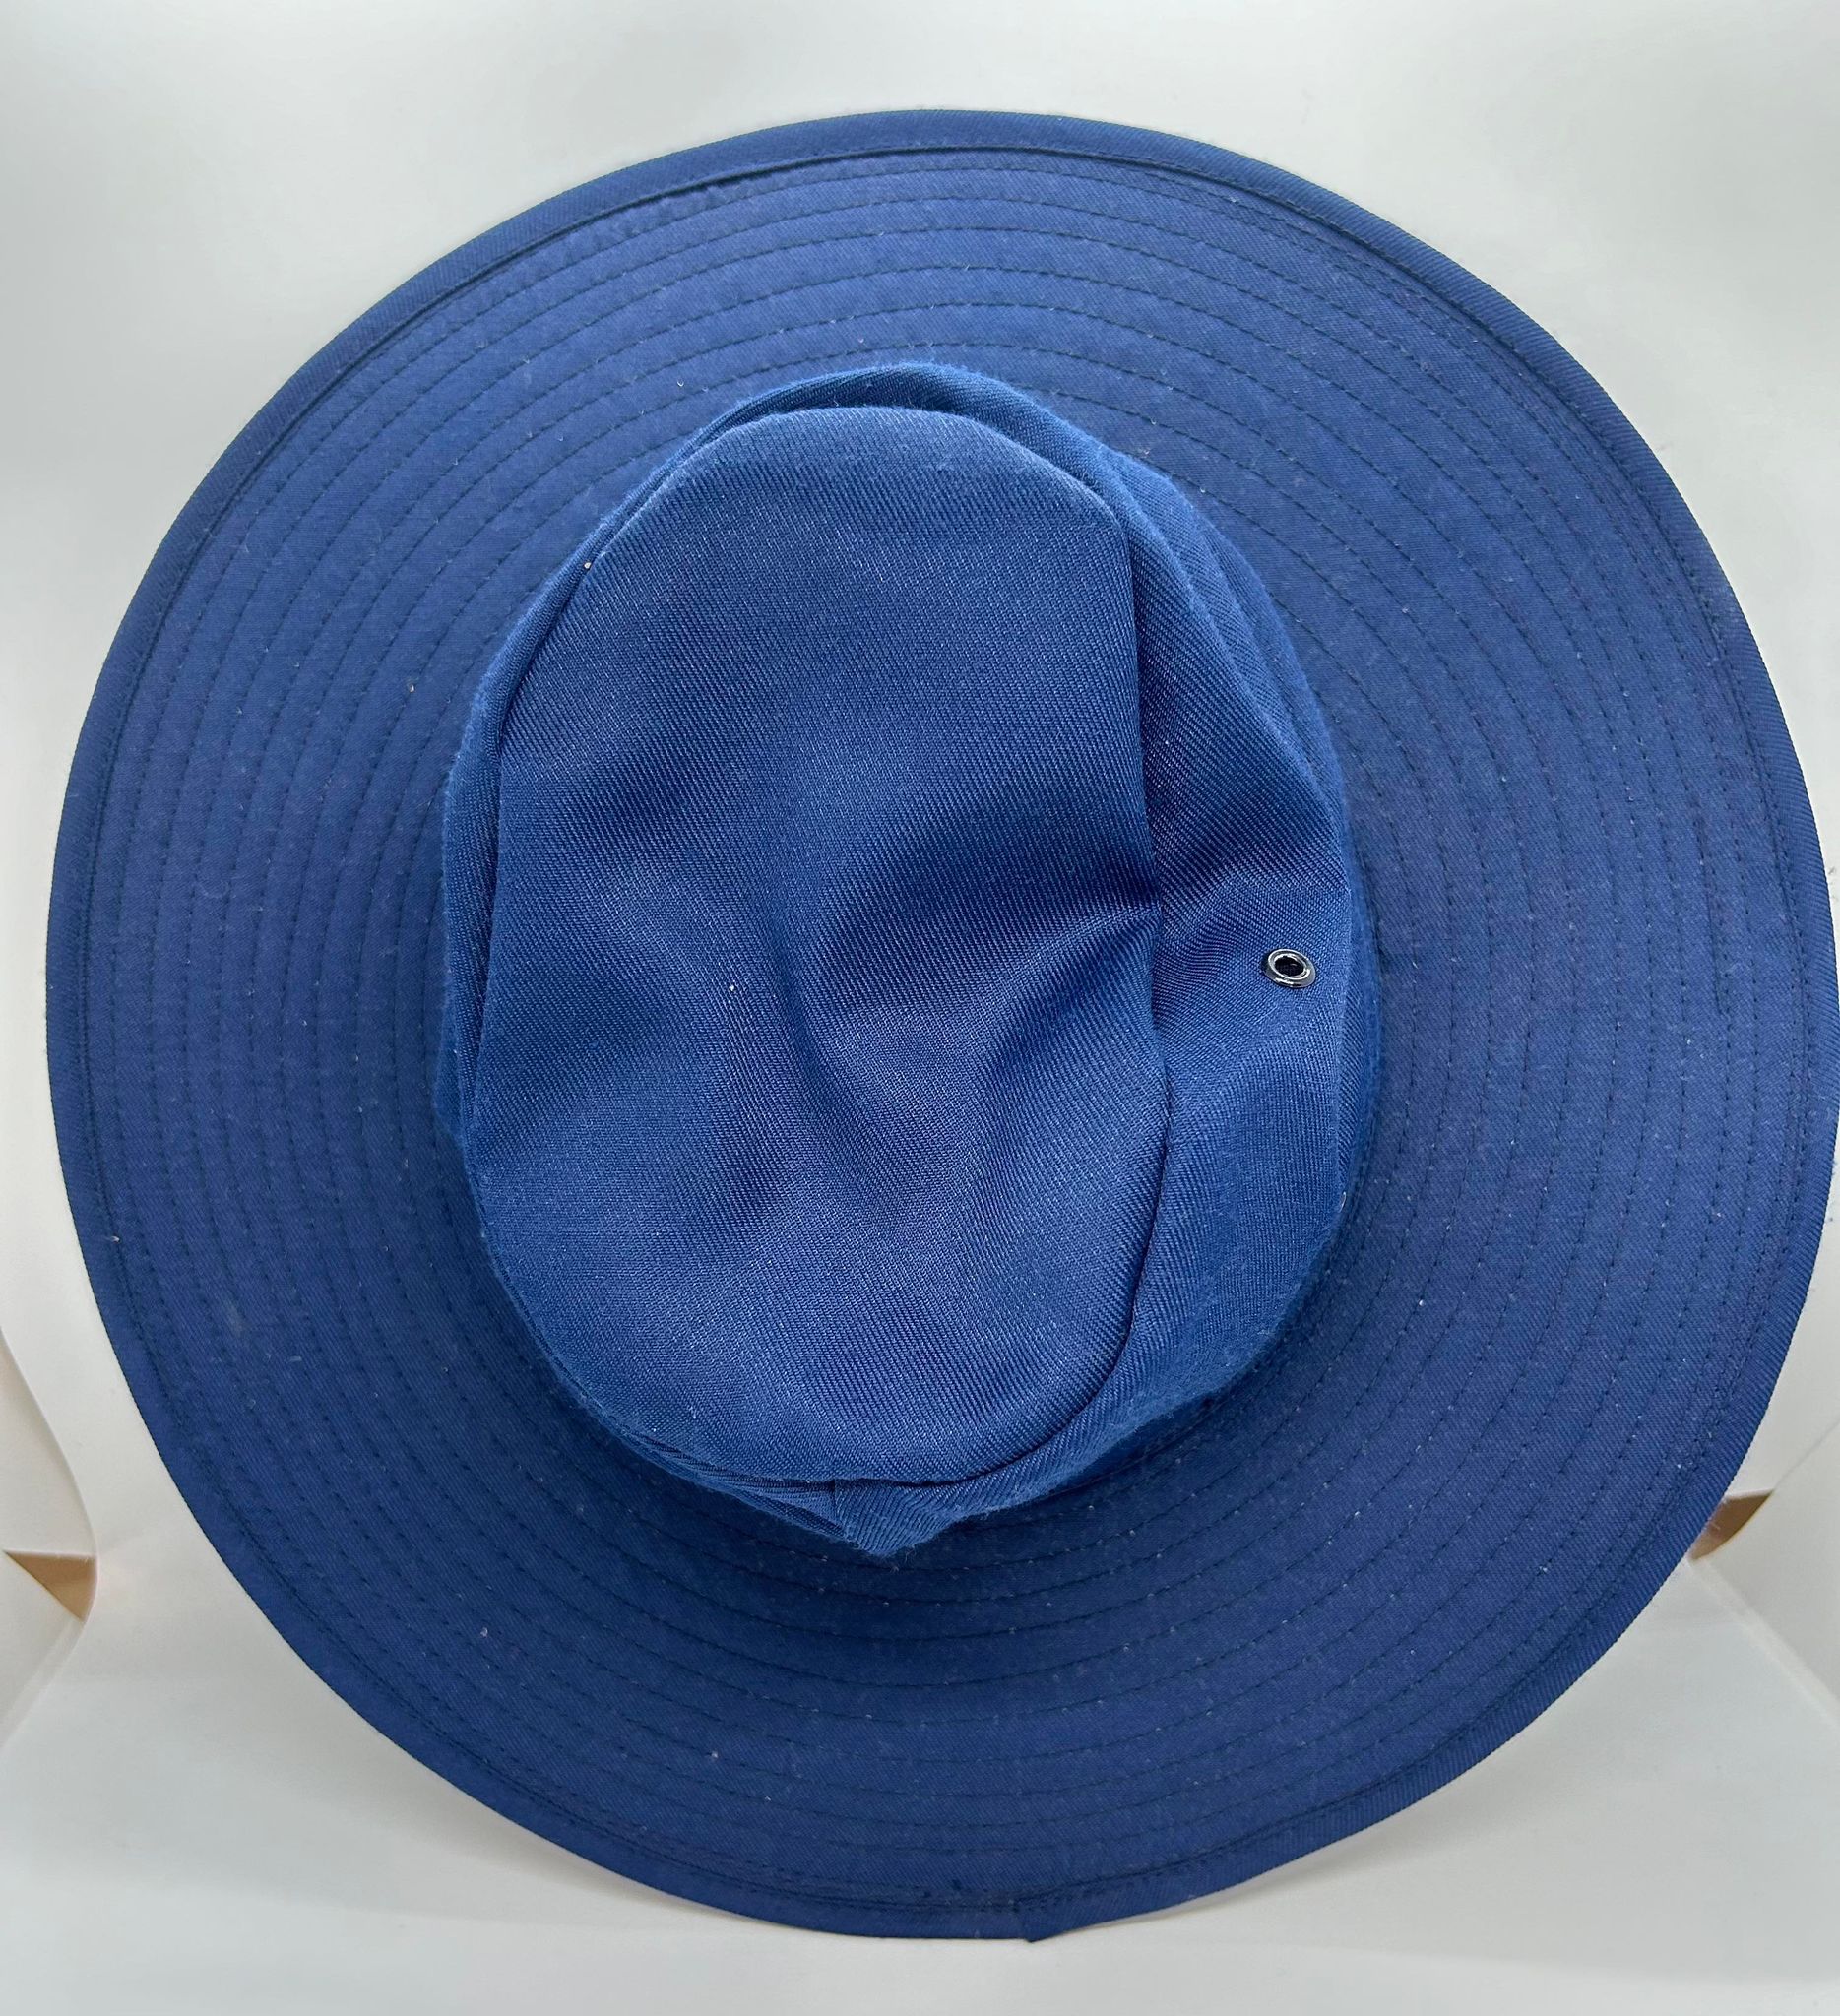 a blue wide brim hat